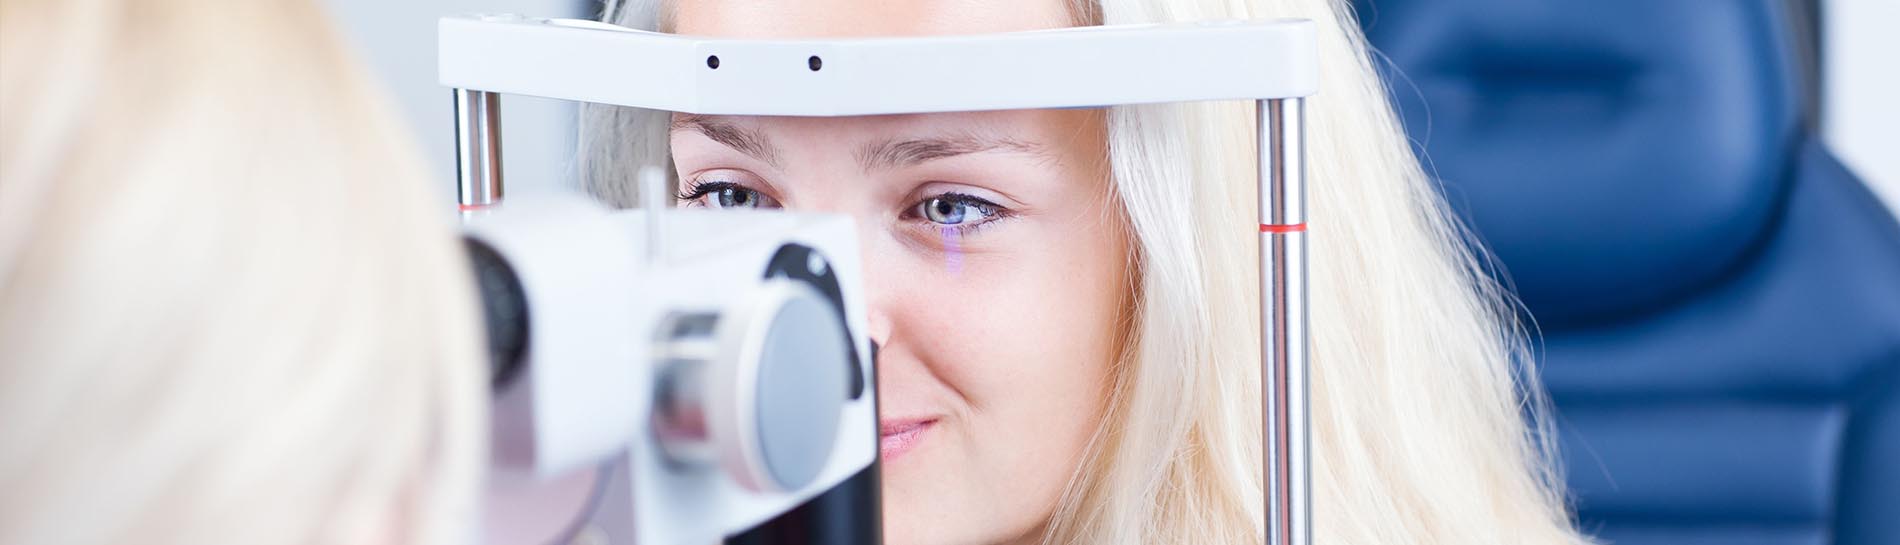 Tévhitek - Lézeres látásjavítás - Orbident | egészség- és lézerklinika